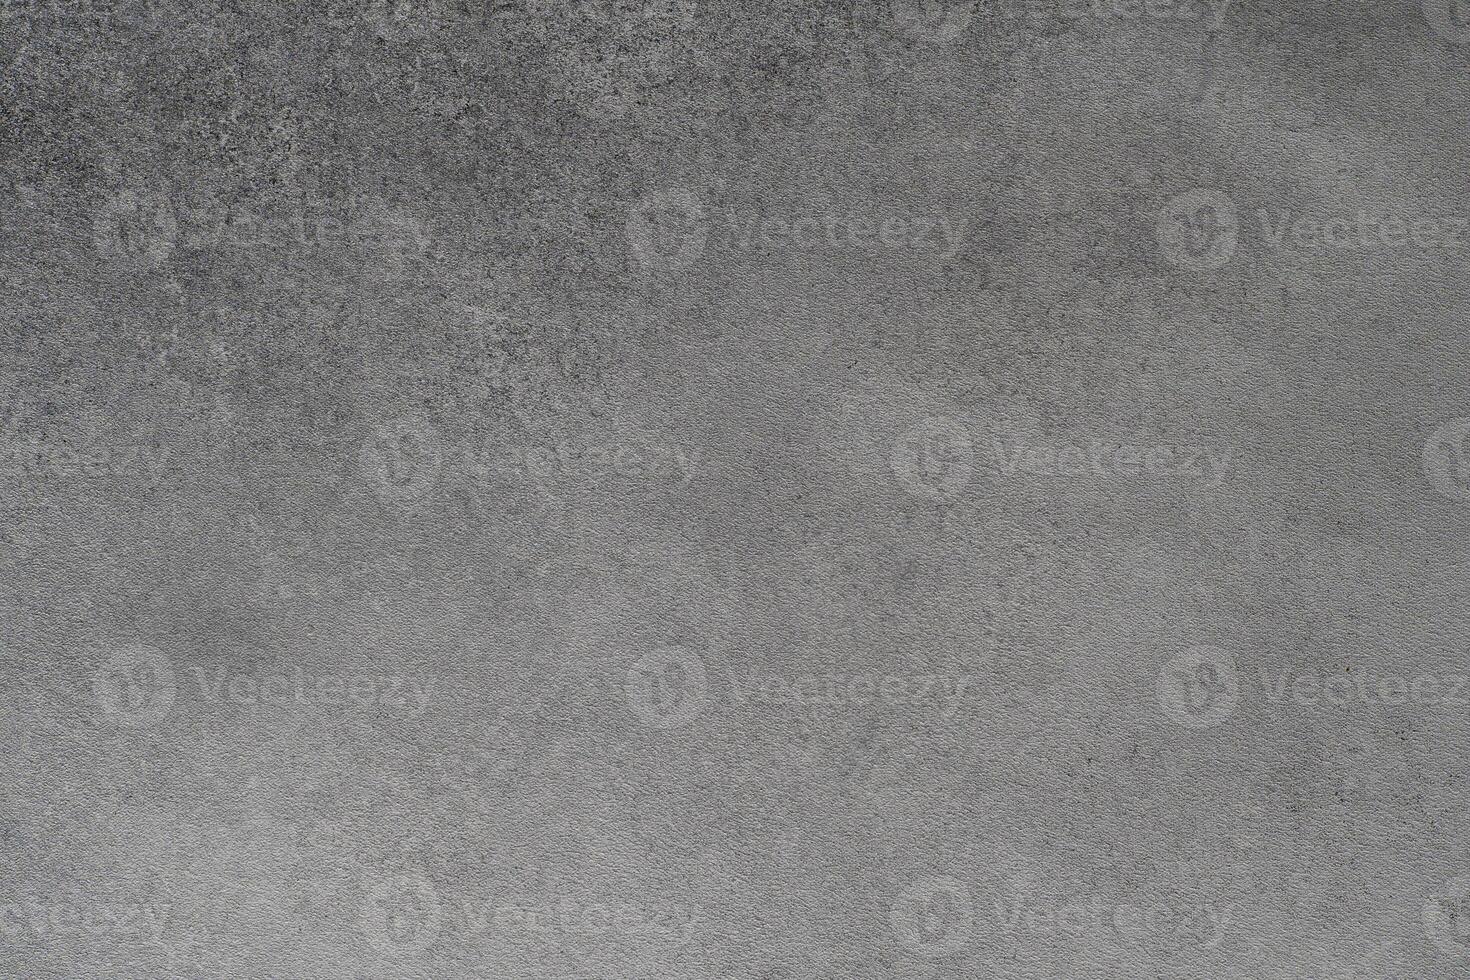 grå bakgrund. betong lutning abstrakt Färg. foto